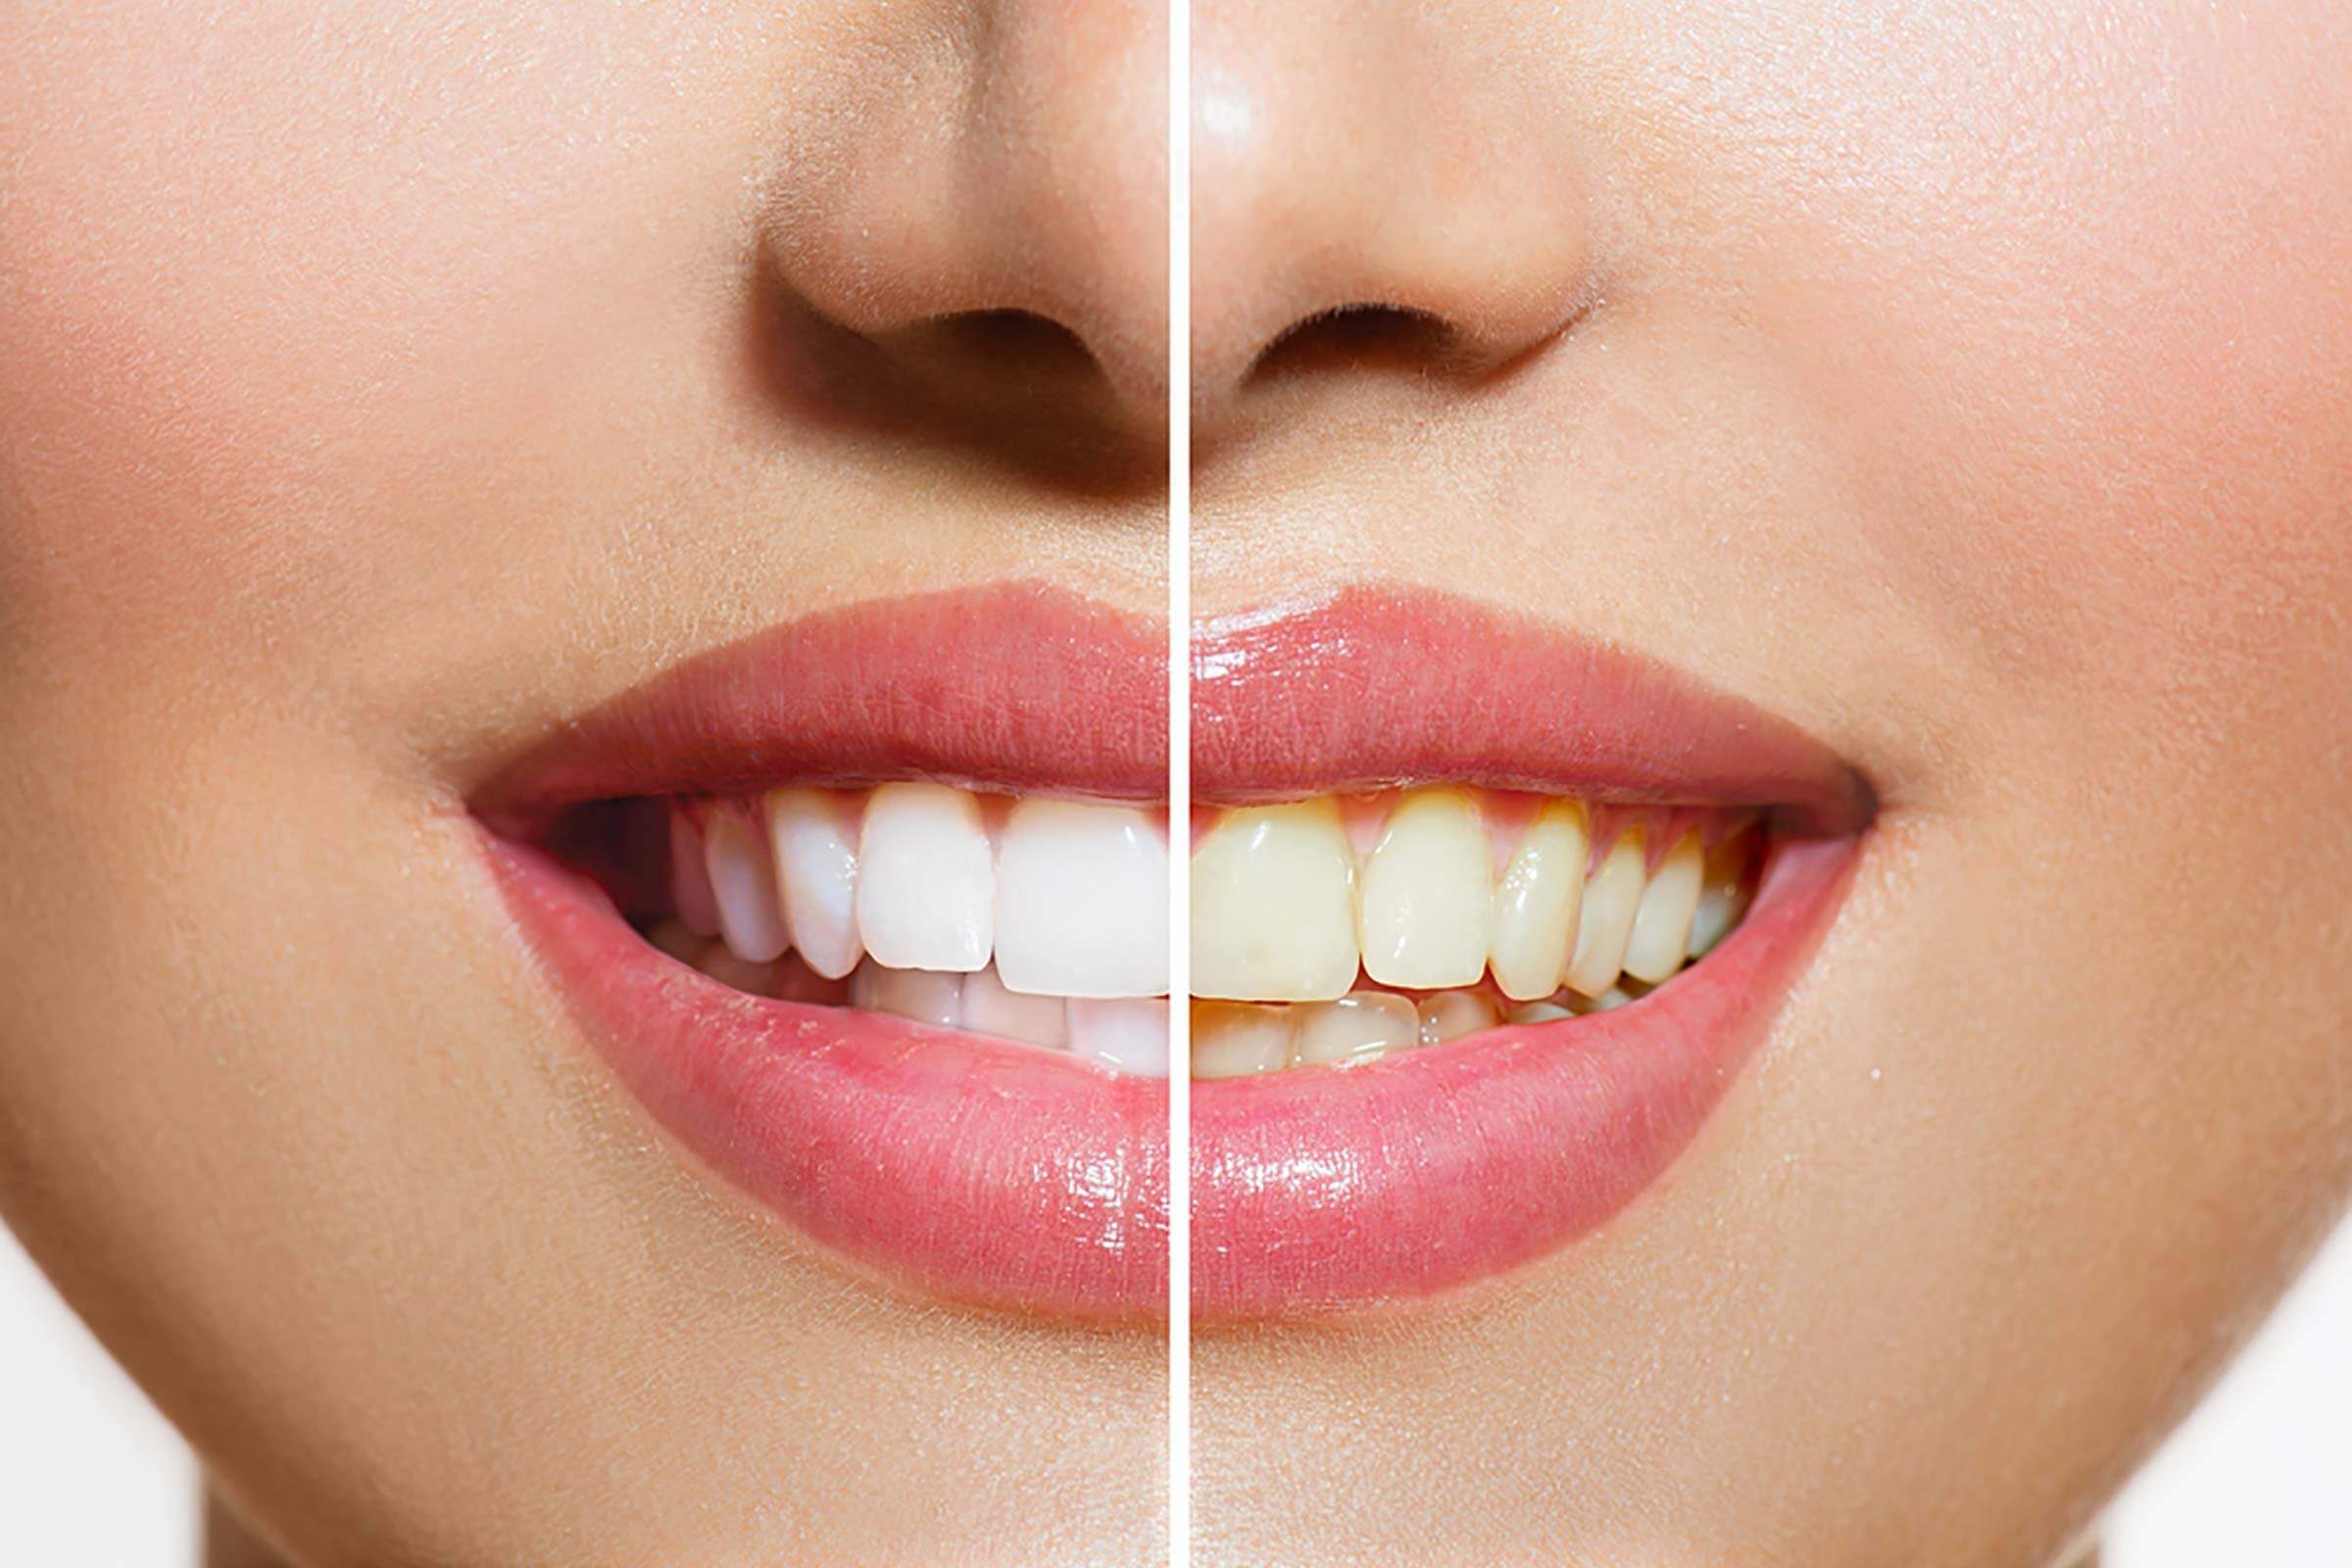 7 Dental Tips to Keep Teeth Healthy